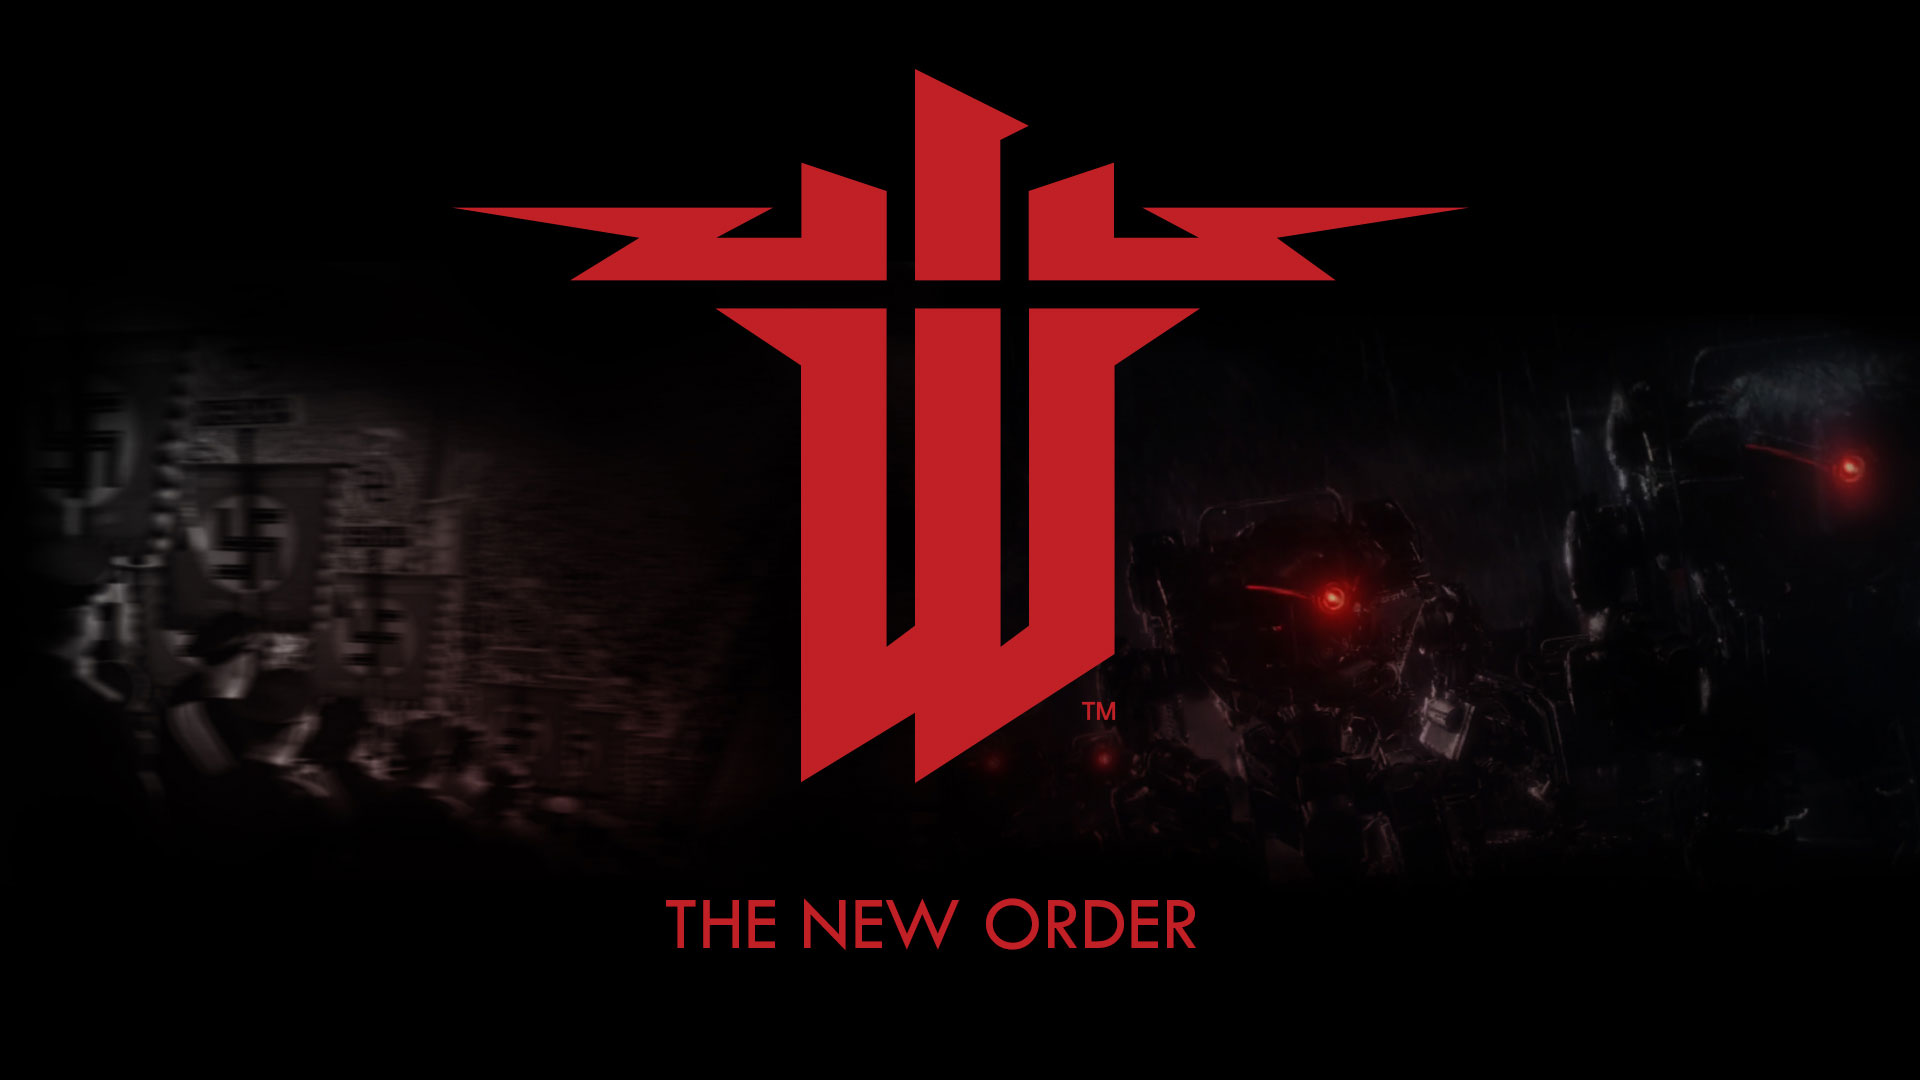 Wolfenstein-The-New-Order